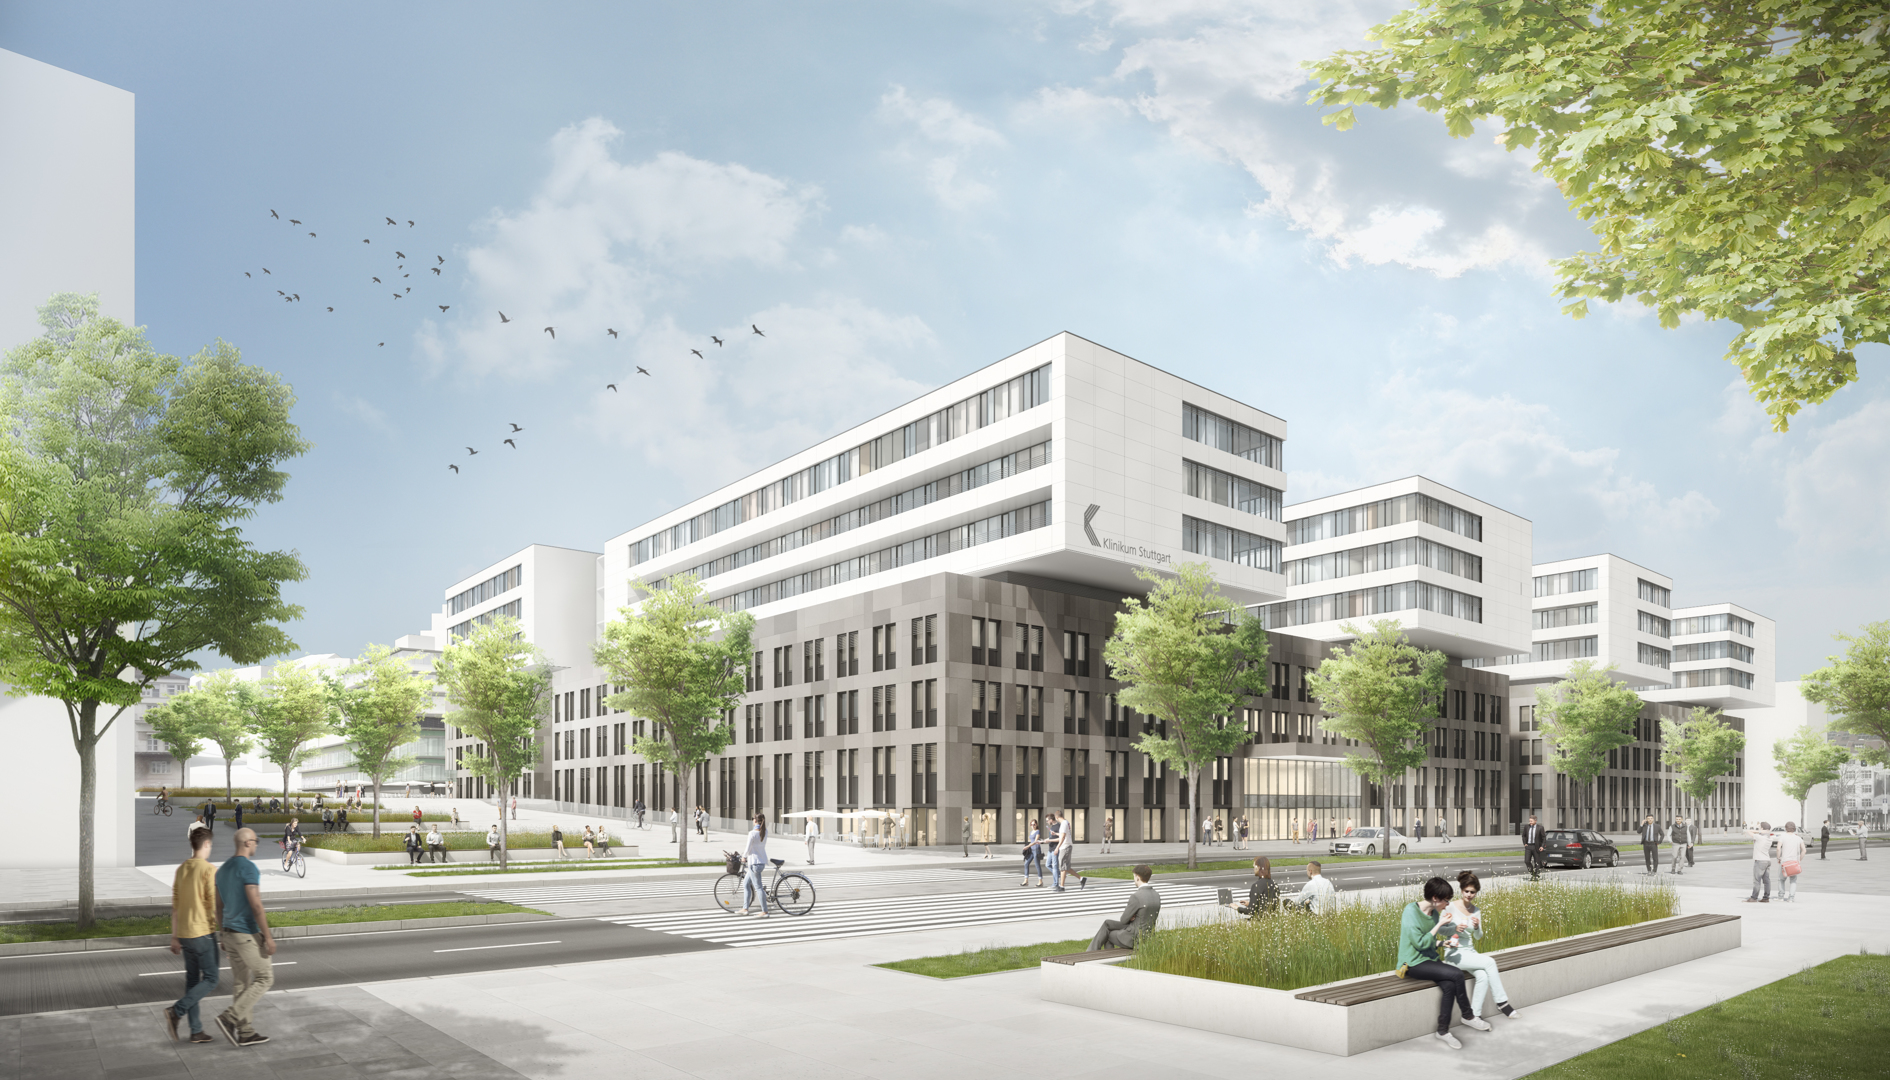 Der Entwurf zeigt den Neubau des Katharinenhospitals aus der Perspektive Hofgarten. Grafik: Arcass Planungsgesellschaft mbH